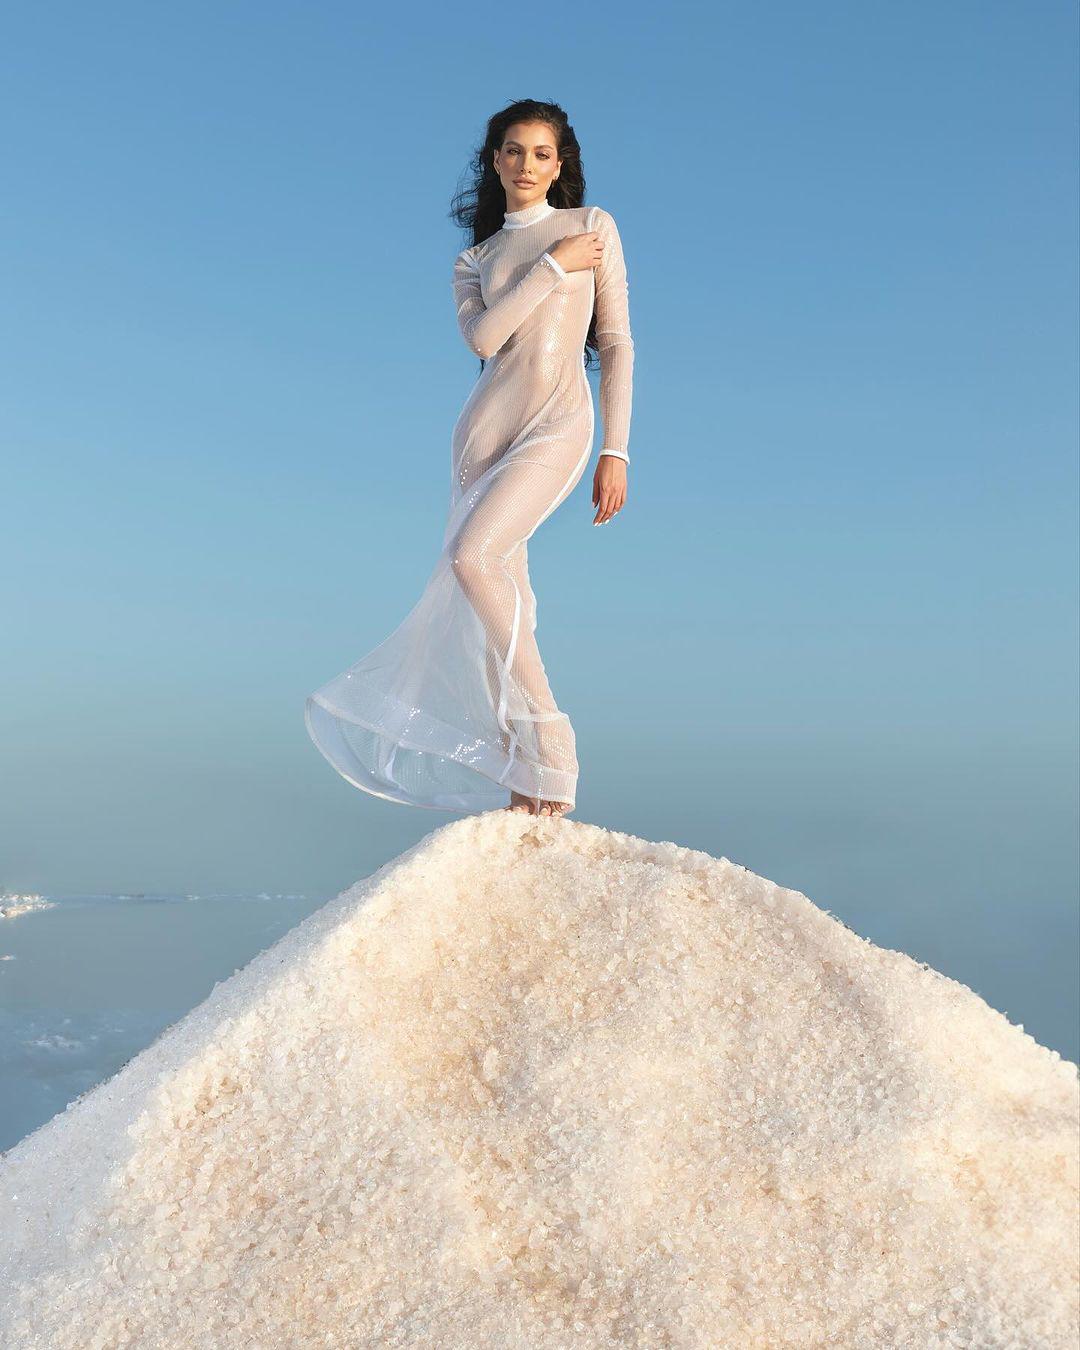 Valentina Figuera khoe đường cong hình thể nóng bỏng trong mẫu đầm dài, chất liệu xuyên thấu.&nbsp;